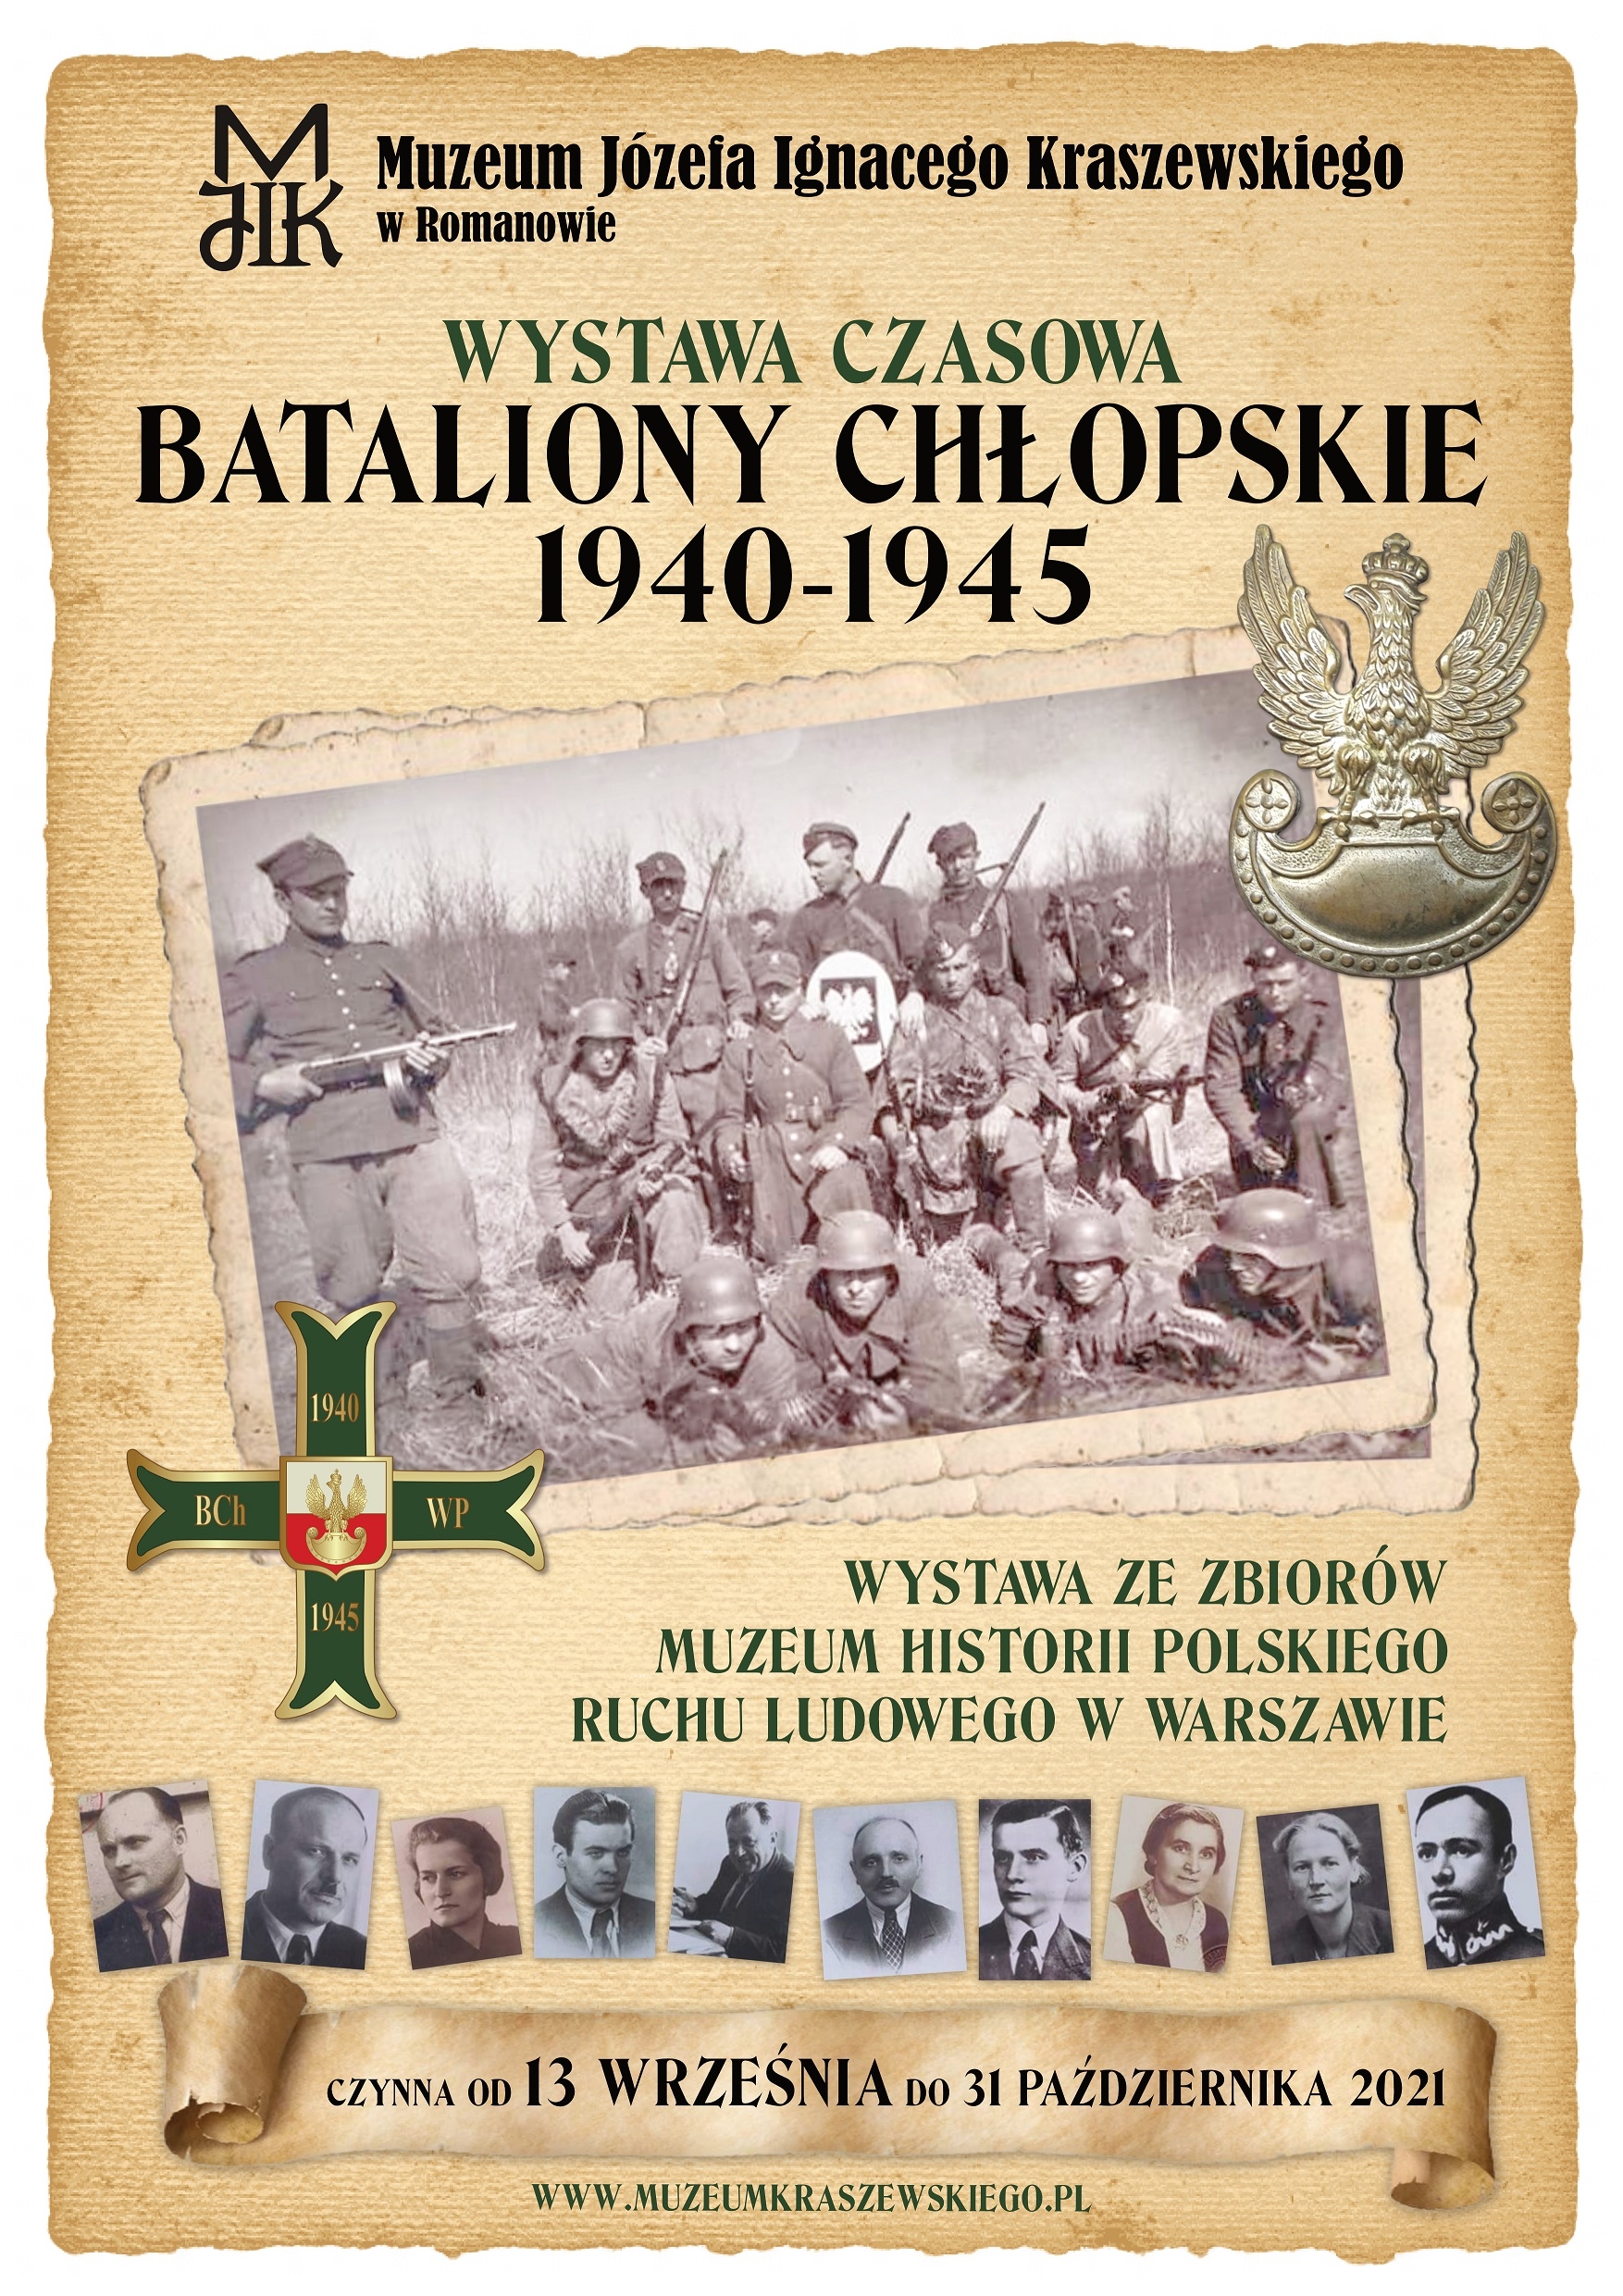 Bataliony Chłopskie 1940-1945